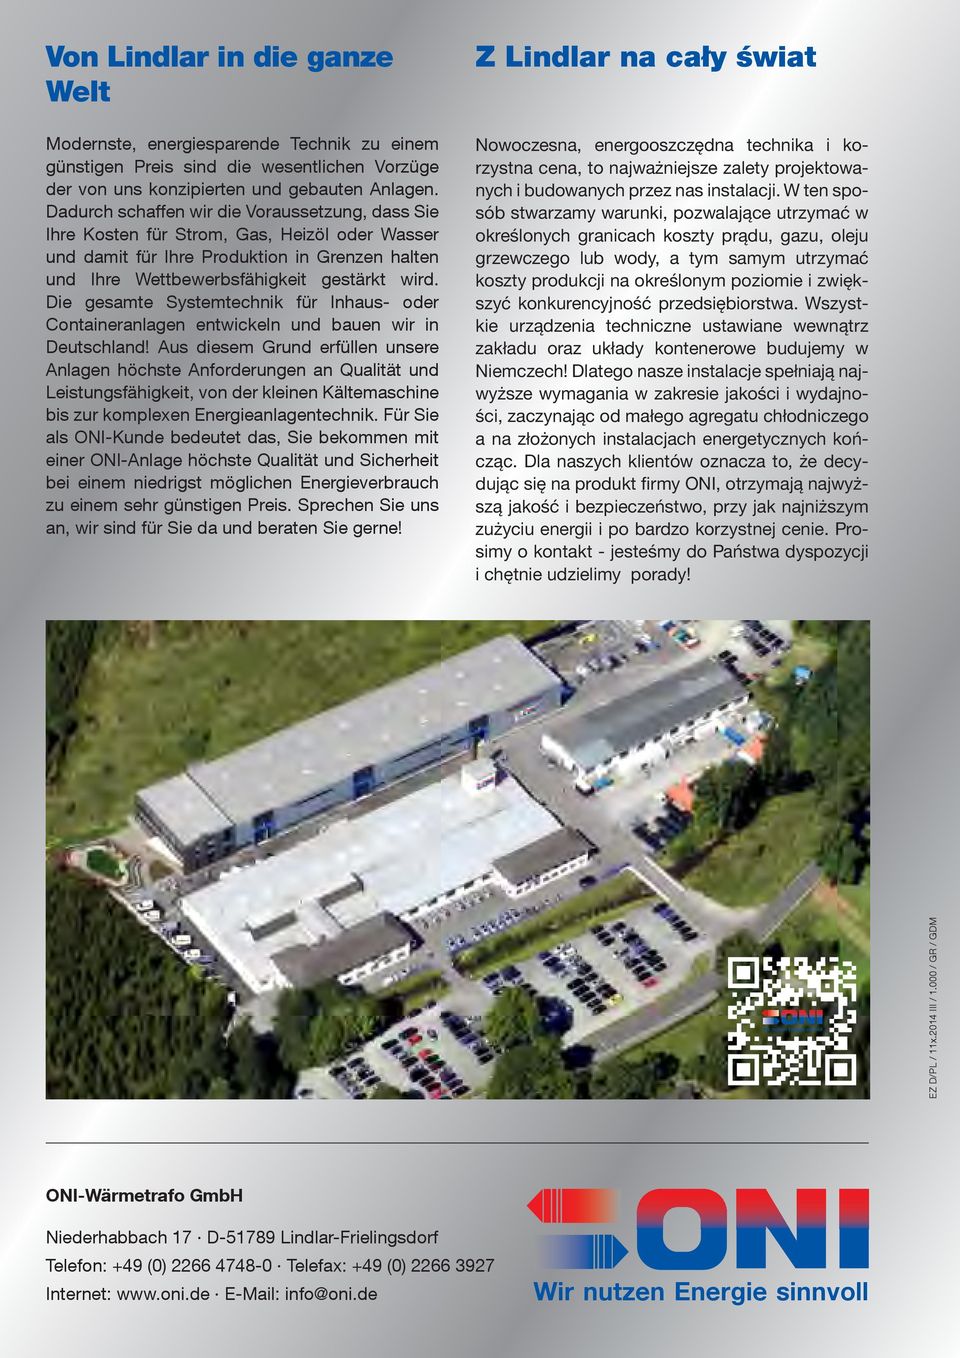 Die gesamte Systemtechnik für Inhaus- oder Containeranlagen entwickeln und bauen wir in Deutschland!